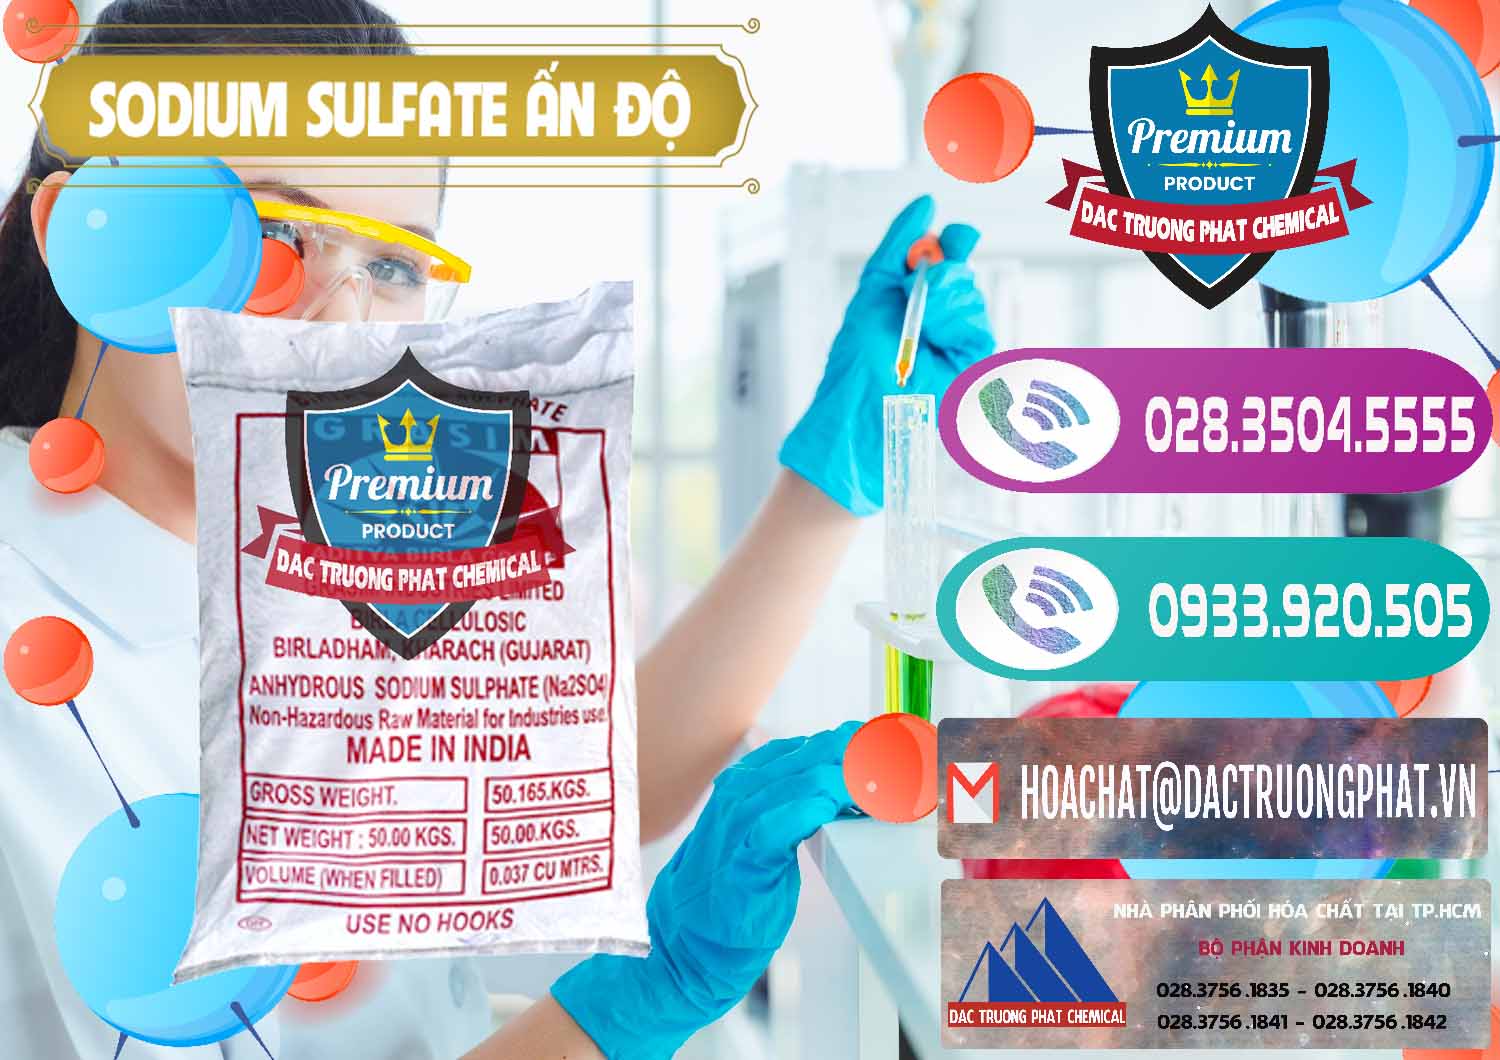 Cty chuyên kinh doanh và bán Sodium Sulphate - Muối Sunfat Na2SO4 Aditya Birla Grasim Ấn Độ India - 0462 - Nơi cung cấp ( nhập khẩu ) hóa chất tại TP.HCM - hoachatxulynuoc.com